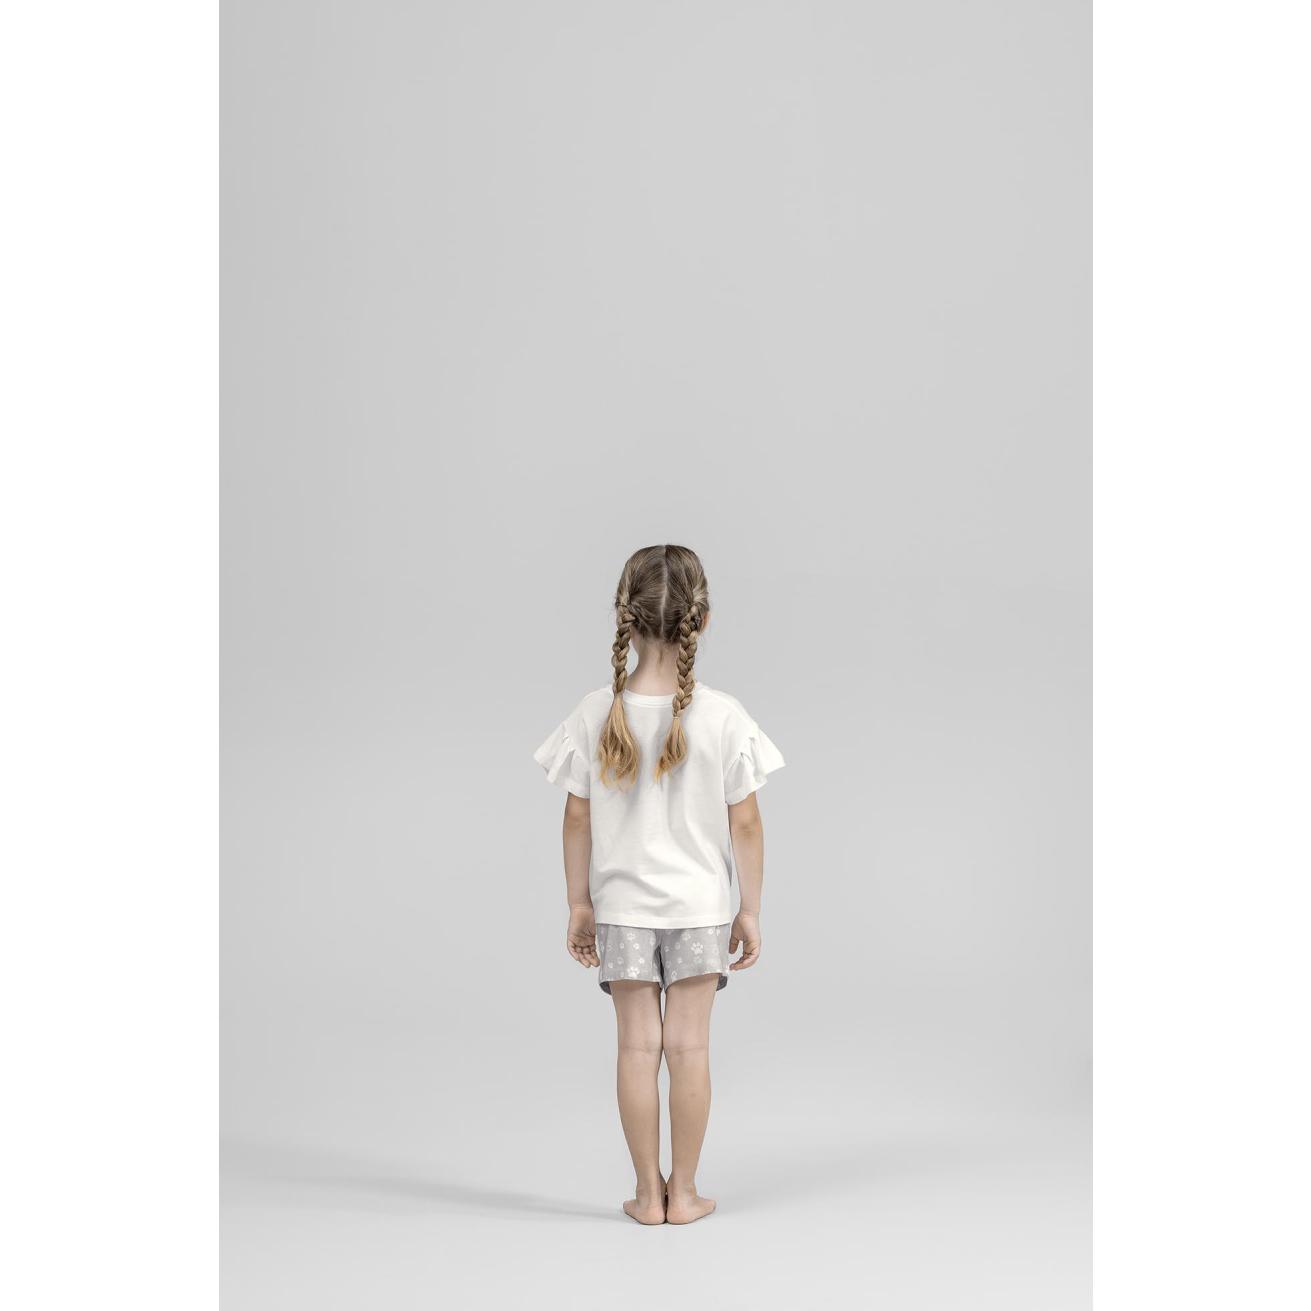 Пижама для девочек Kids by togas Китти бело-серая 116-122 см, цвет белый, размер 116-122 см - фото 5